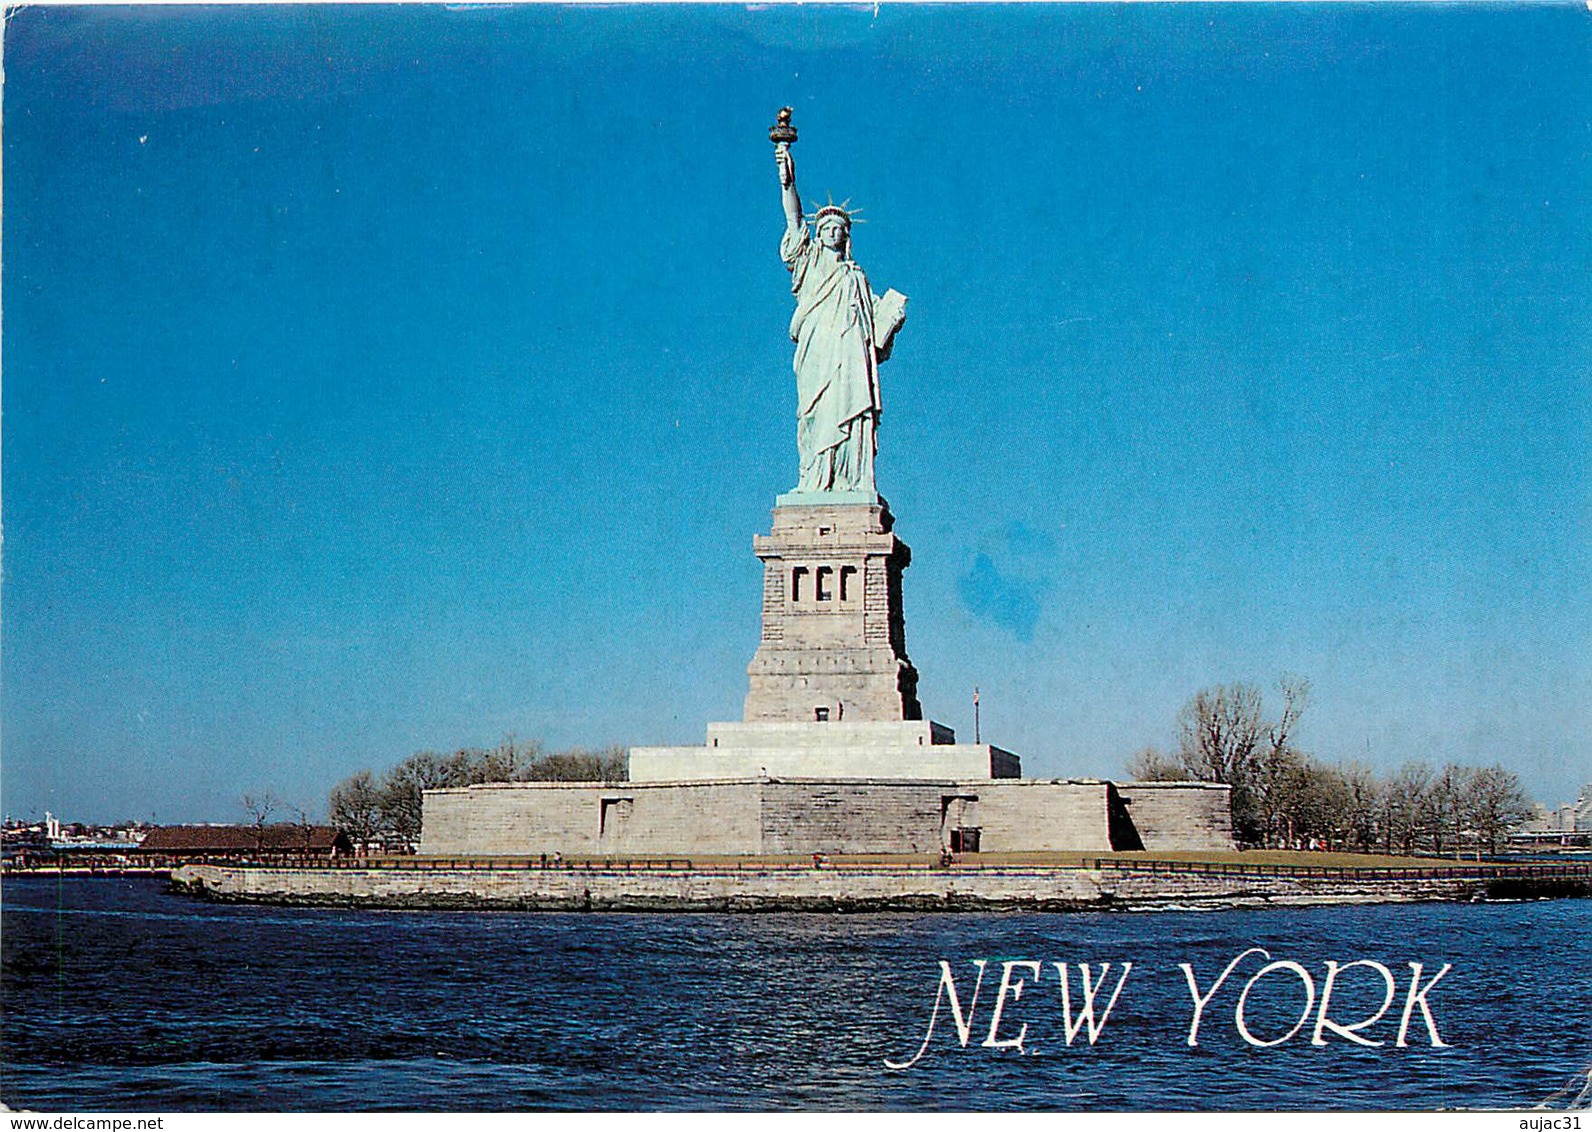 Etats-Unis - New York - Statue De La Liberté - The Statue Of Liberty In New York Harbor - Moderne Grand Format - état - Statua Della Libertà